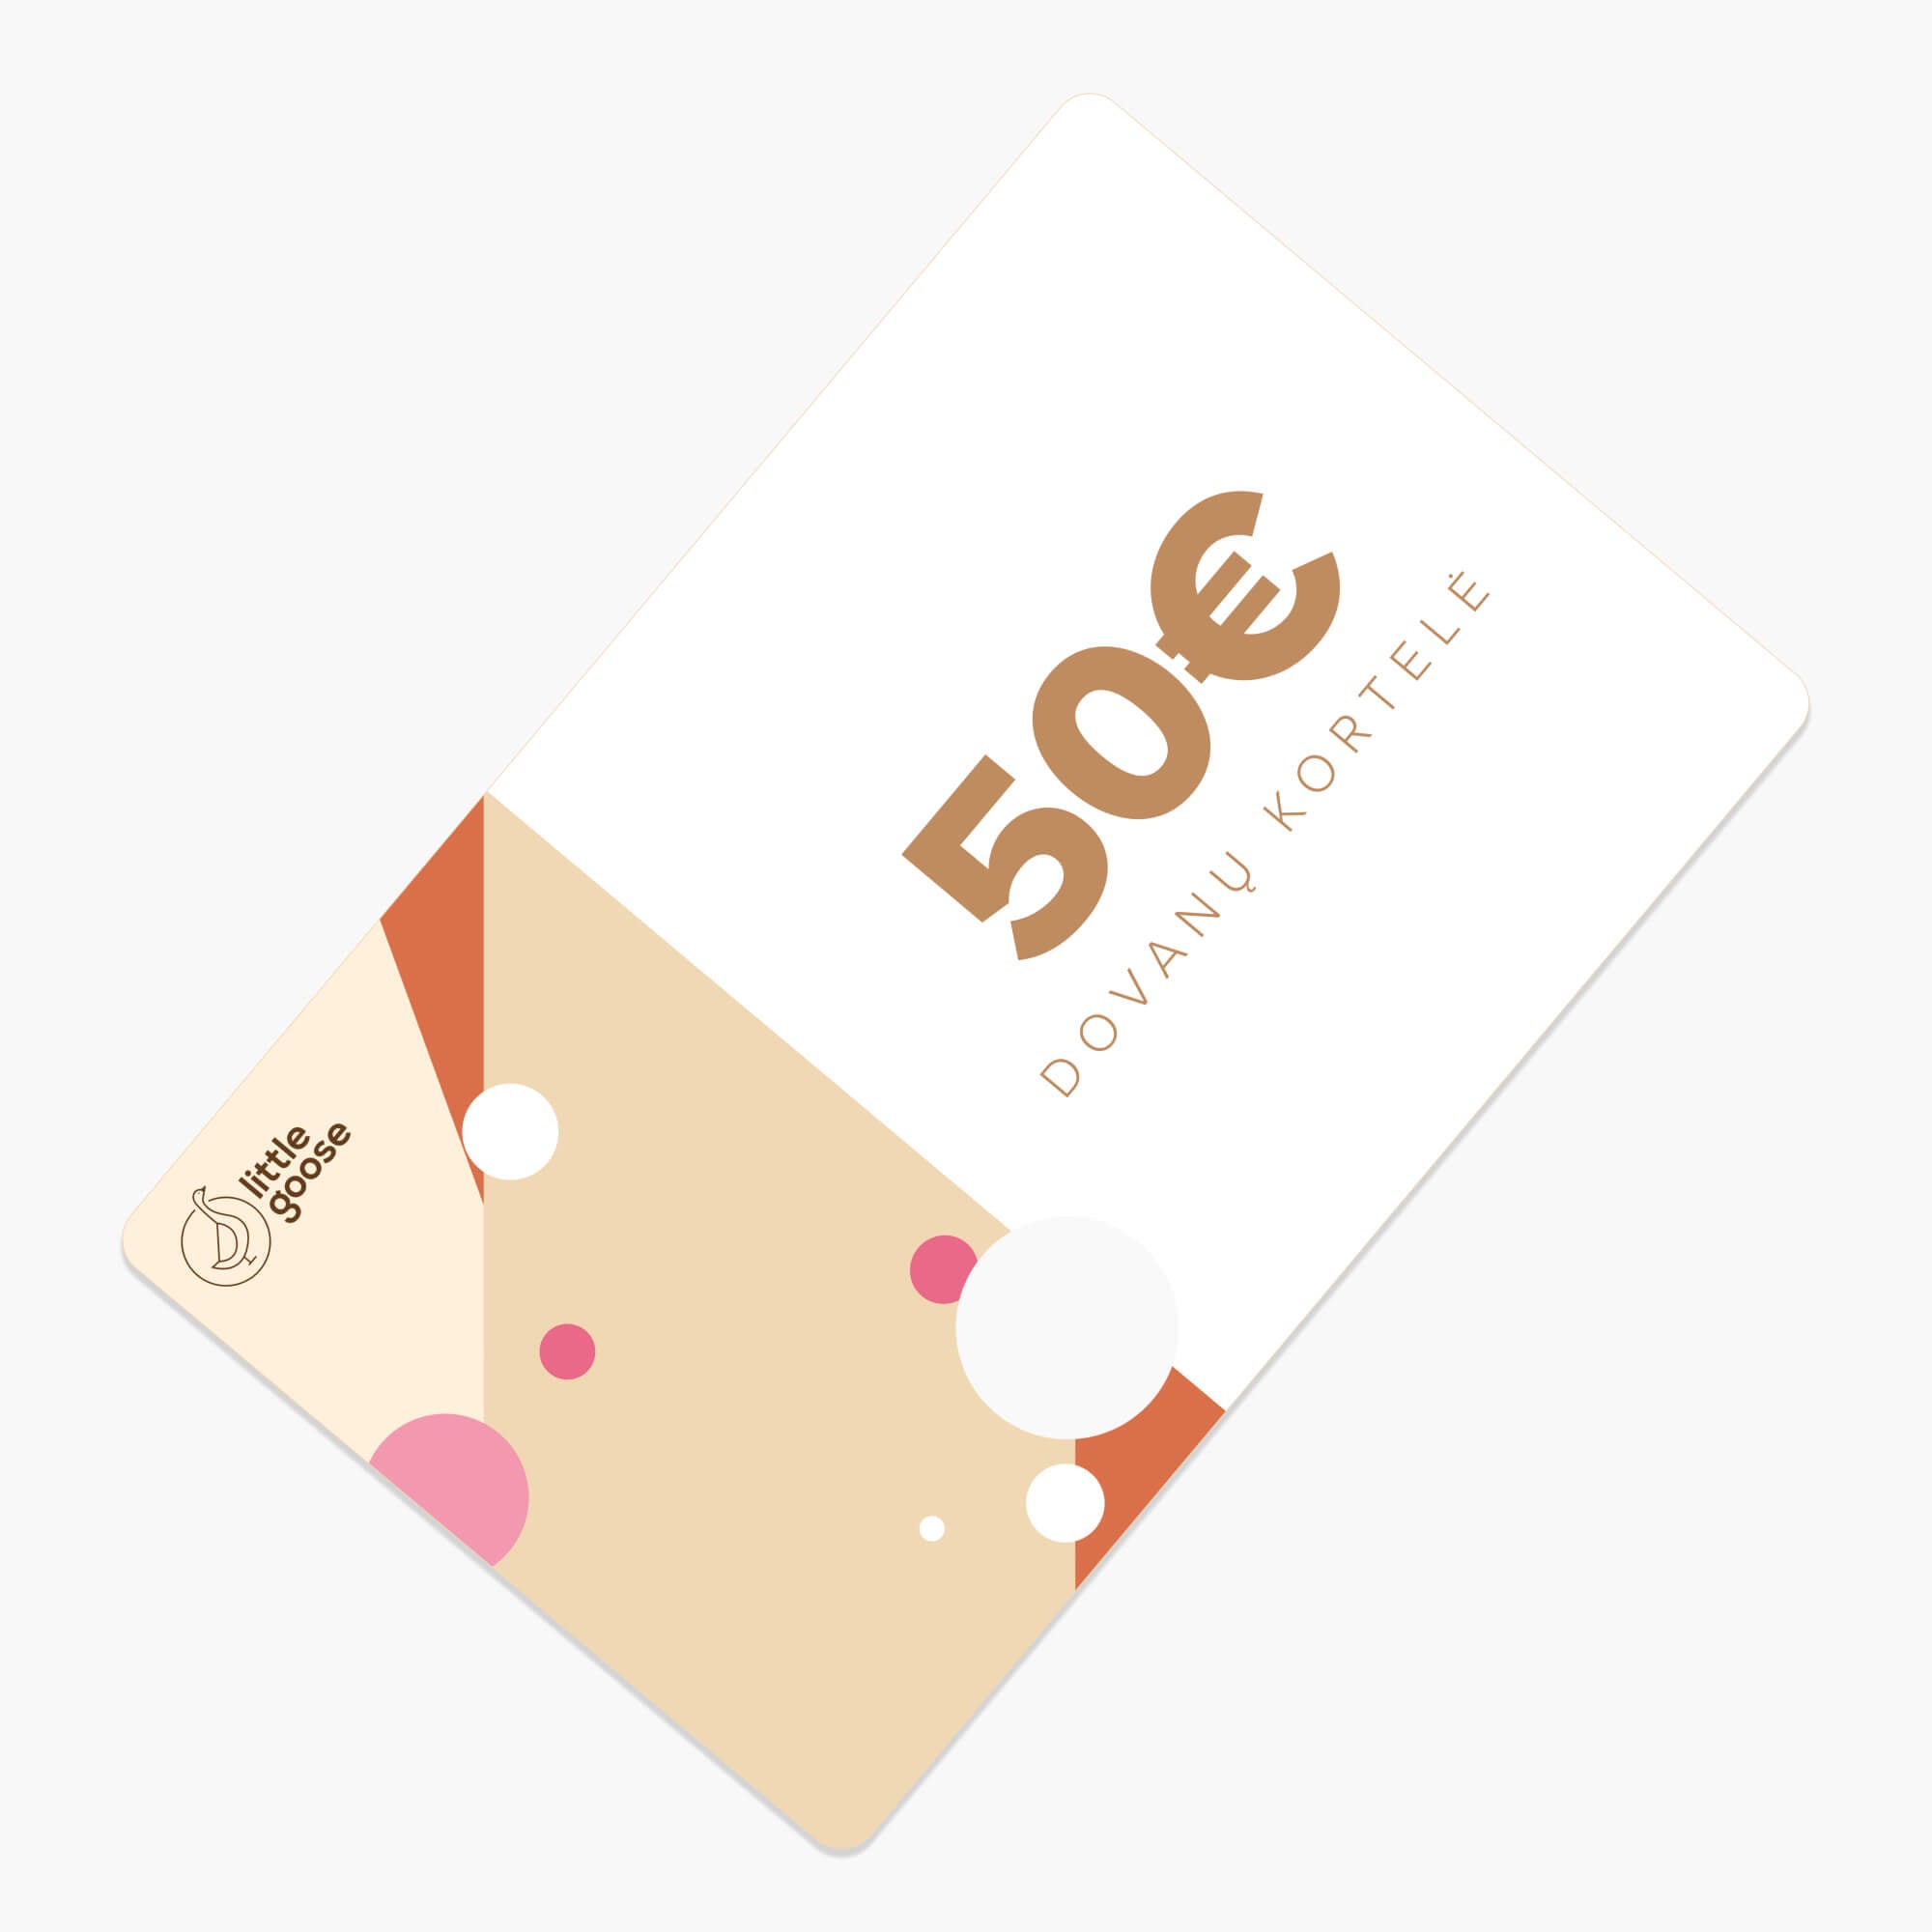 Little Goose dovanų kortelė - €50.00 - little-goose.com